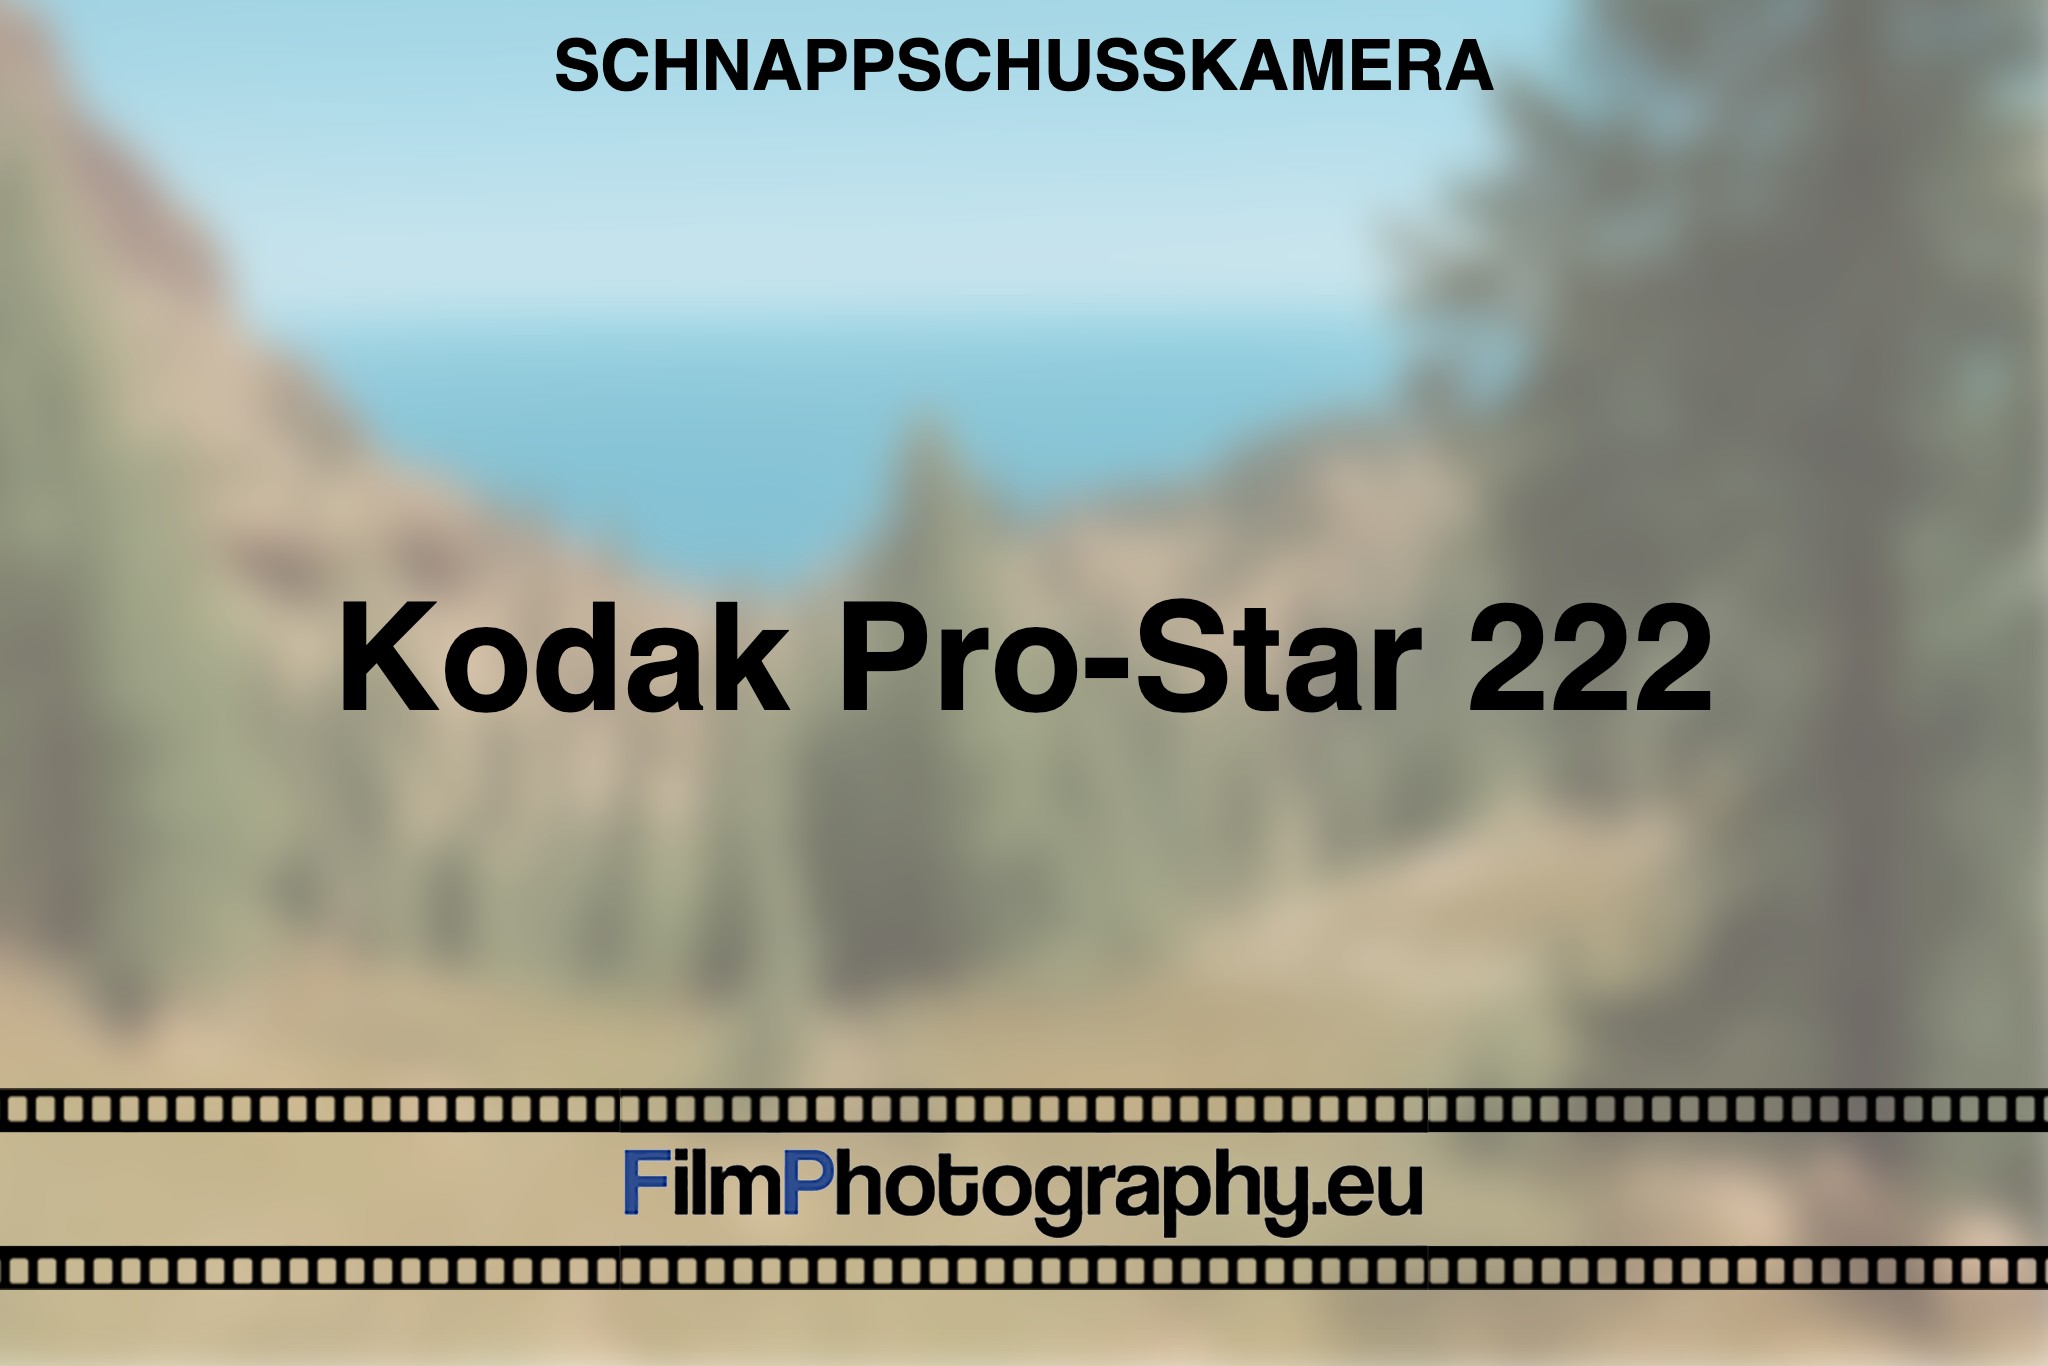 kodak-pro-star-222-schnappschusskamera-bnv